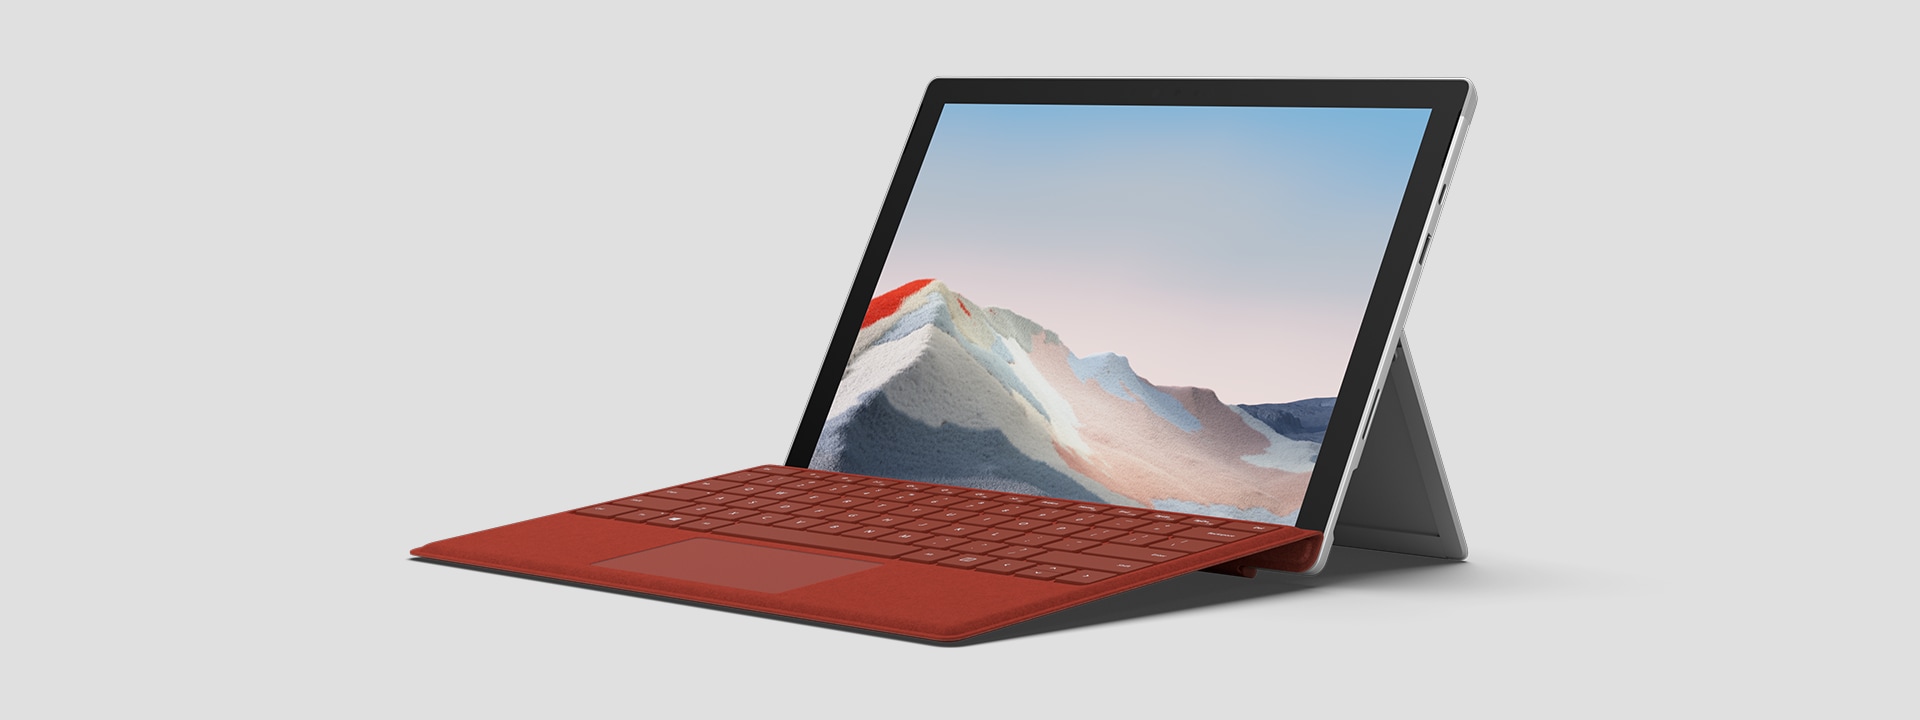 Surface Pro 7+ voor zakelijk gebruik, geplaatst op een kickstand, met scherm en toetsenbord zichtbaar.